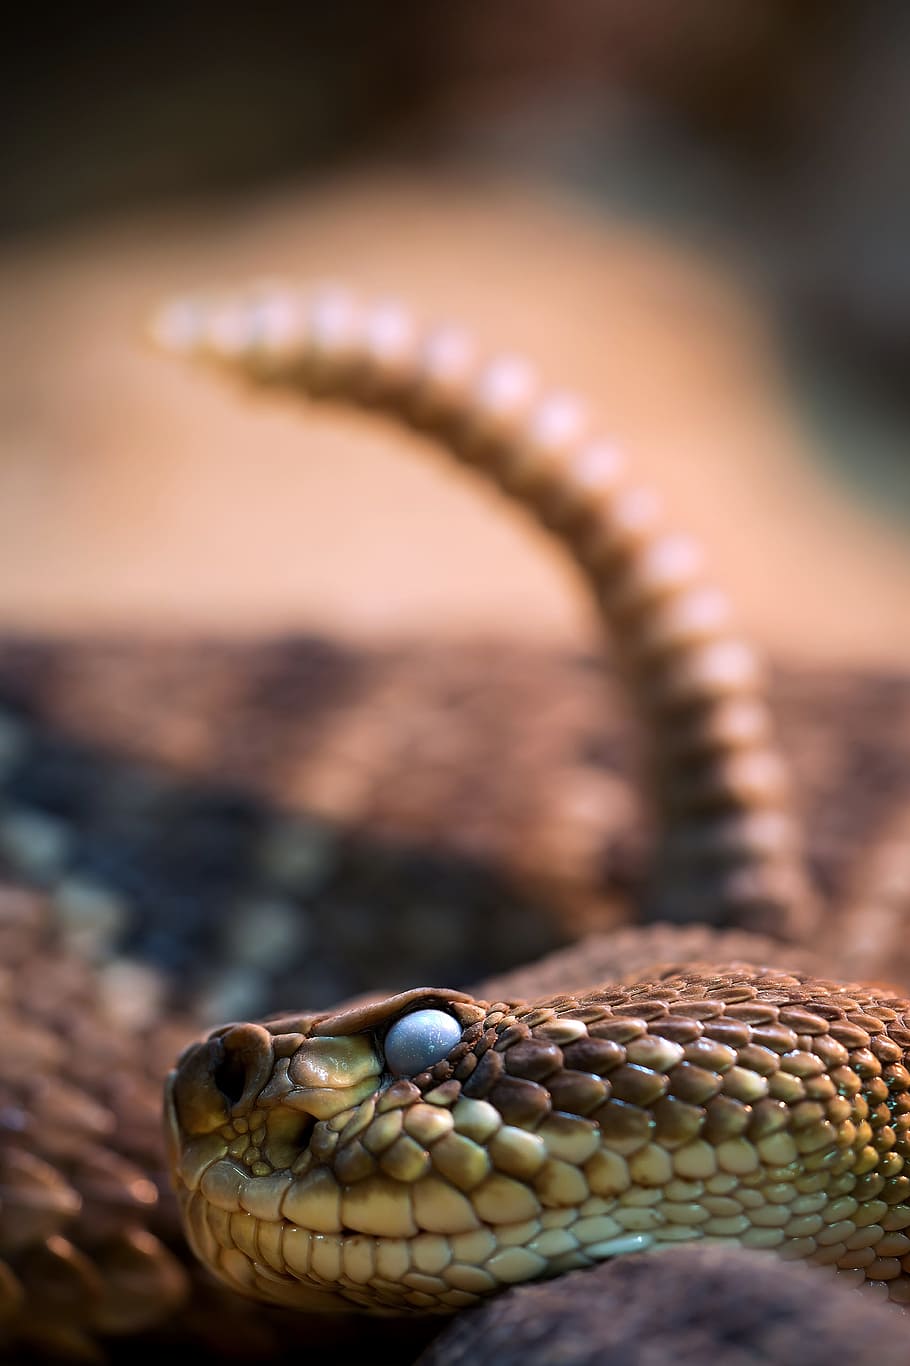 marrón, beige, serpiente, gris, superficie, cabeza de serpiente, sonajero, serpiente venenosa, cerca, serpiente de cascabel